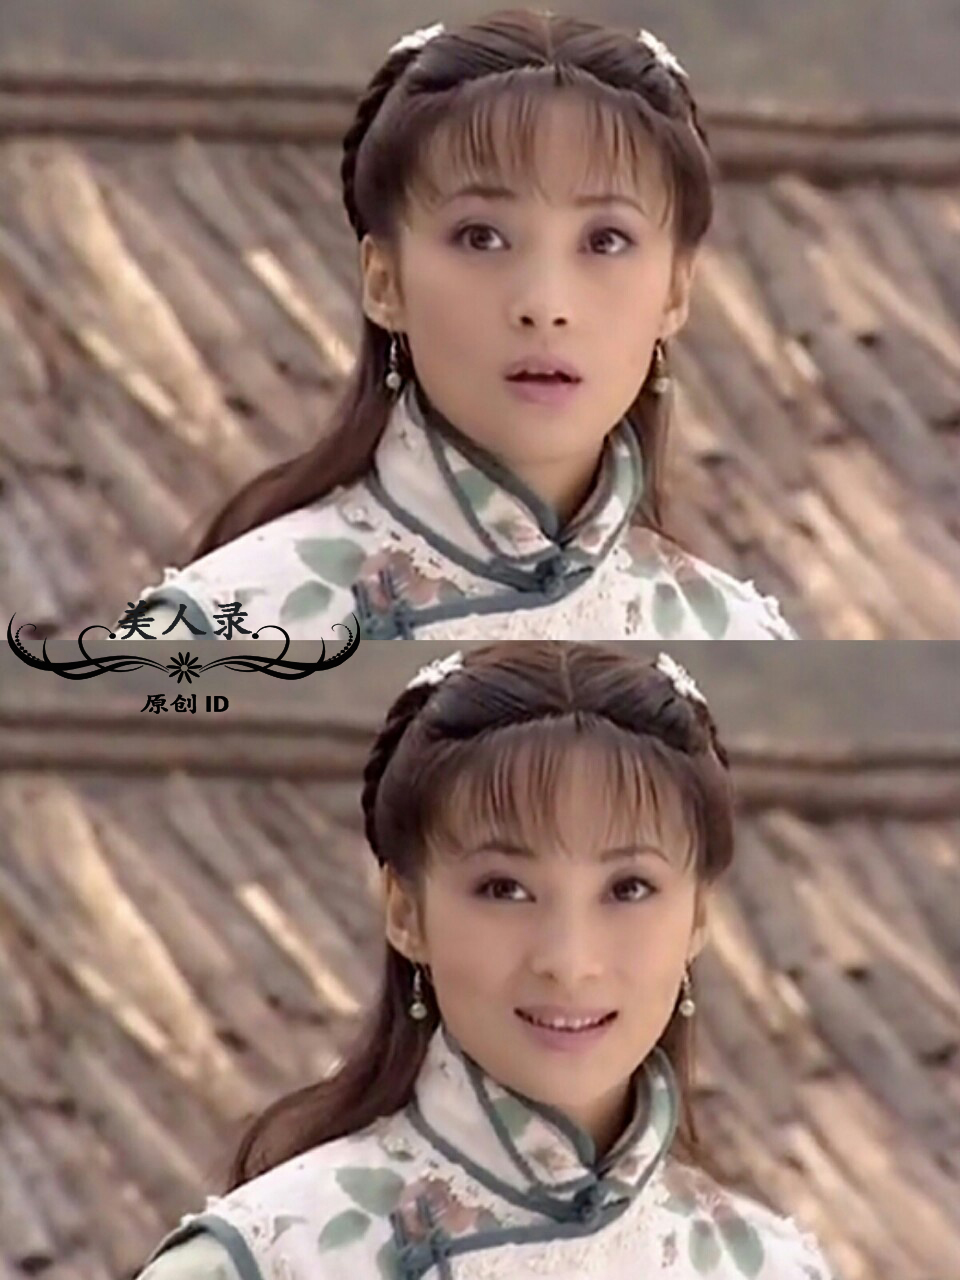 娱乐 正文 2000年,蒋勤勤与赵文卓一起出演琼瑶爱情剧《青河绝恋》.